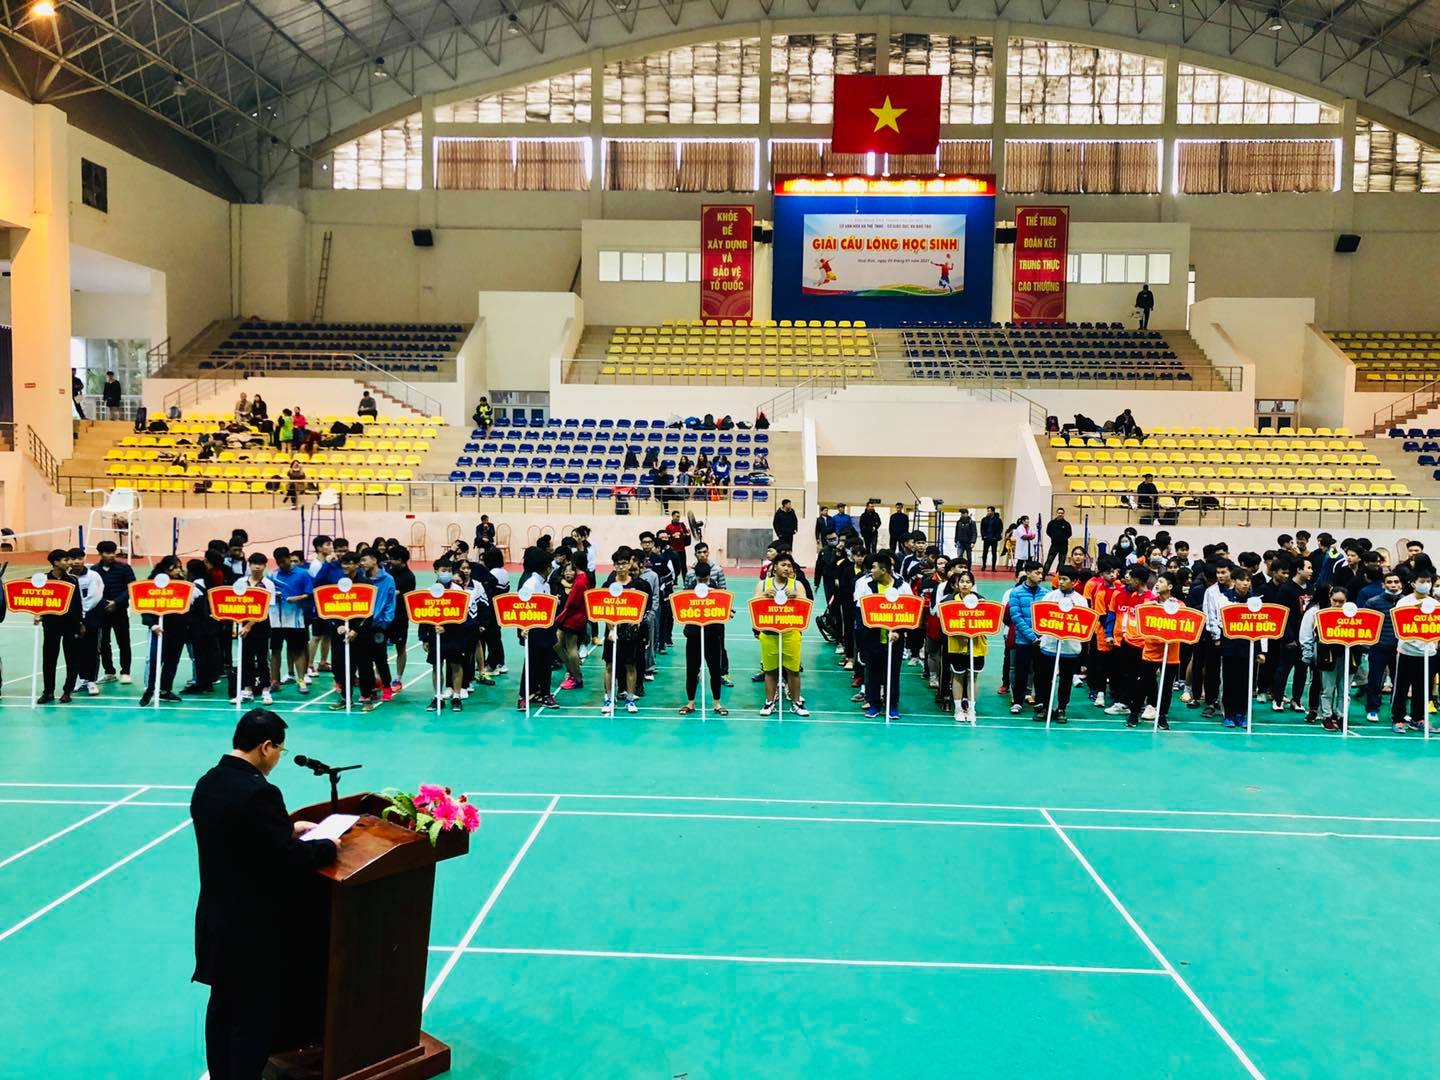 Trường THPT Nguyễn Tất Thành ra quân tham dự giải cầu lông học sinh thành phố Hà Nội